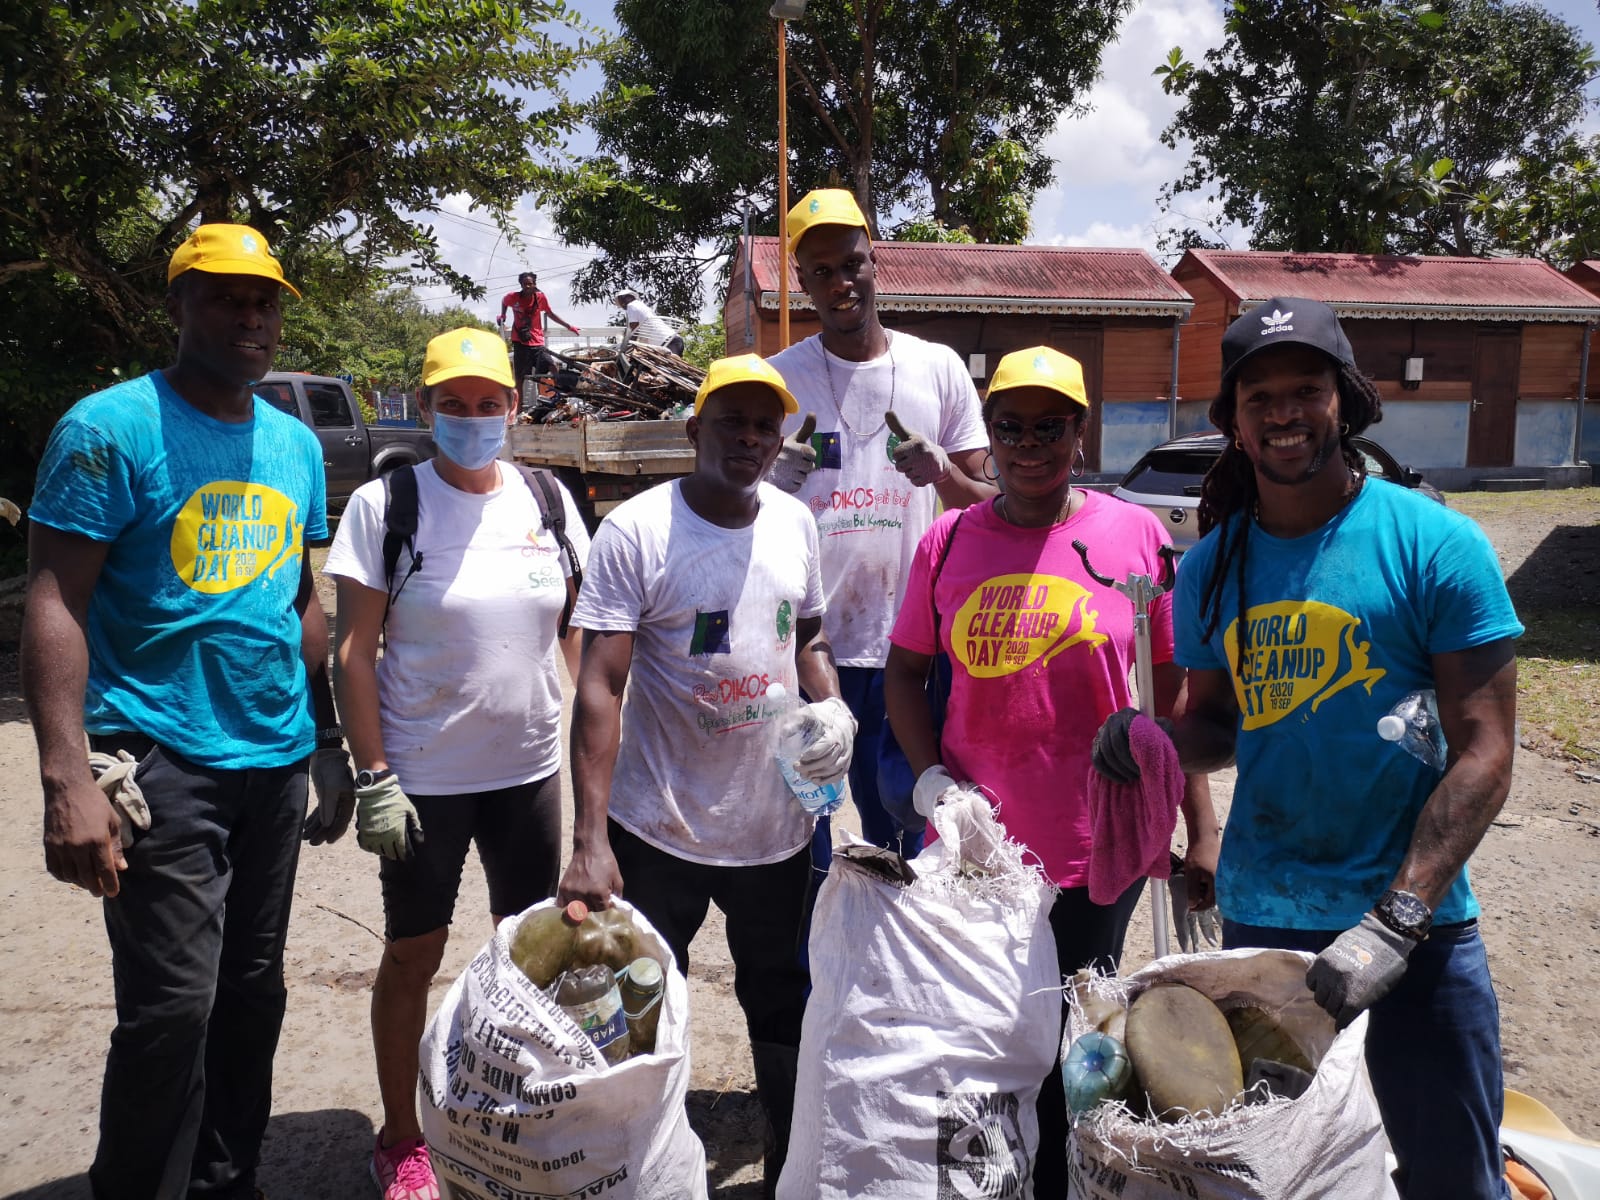     World Clean Up Day : 25 tonnes de déchets collectées en Martinique

